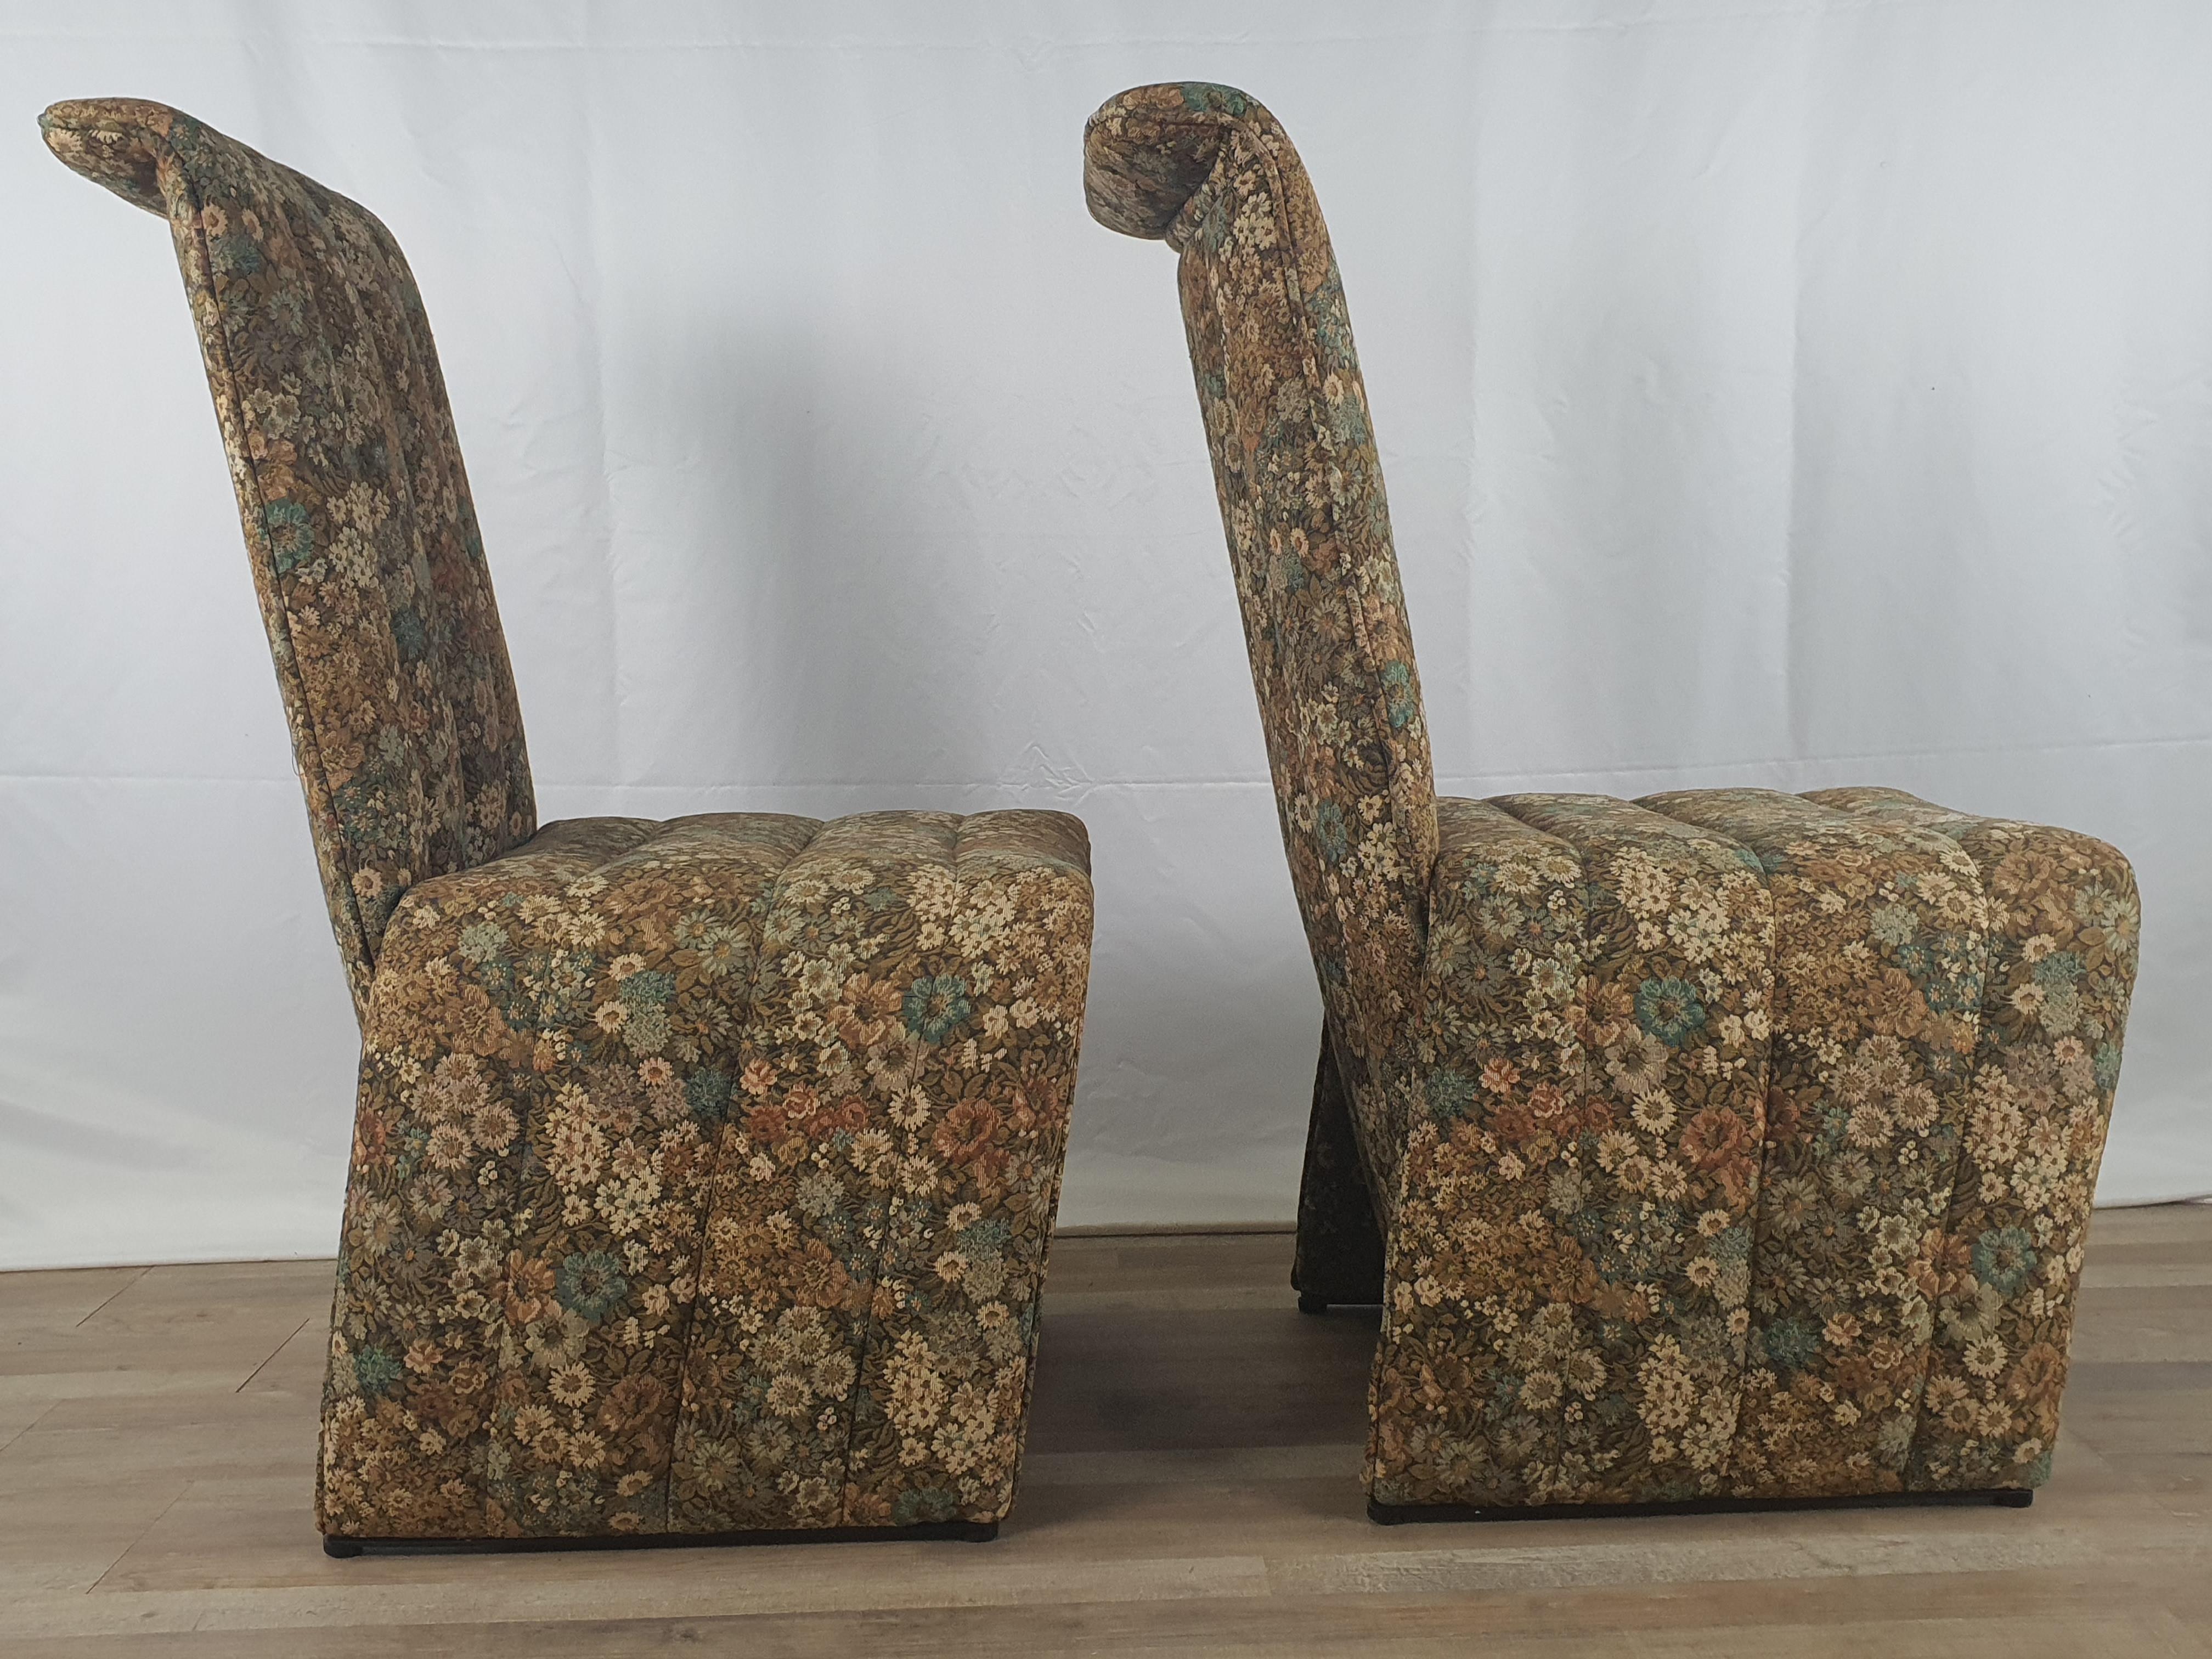 Ein Paar ganz besondere Stühle aus den frühen 1970er Jahren, wahrscheinlich in Norditalien hergestellt.

Man beachte die geschwungene Linie der Sitze und der Rückenlehne, die alle mit einem geblümten Stoff bezogen sind, und die starren schwarzen